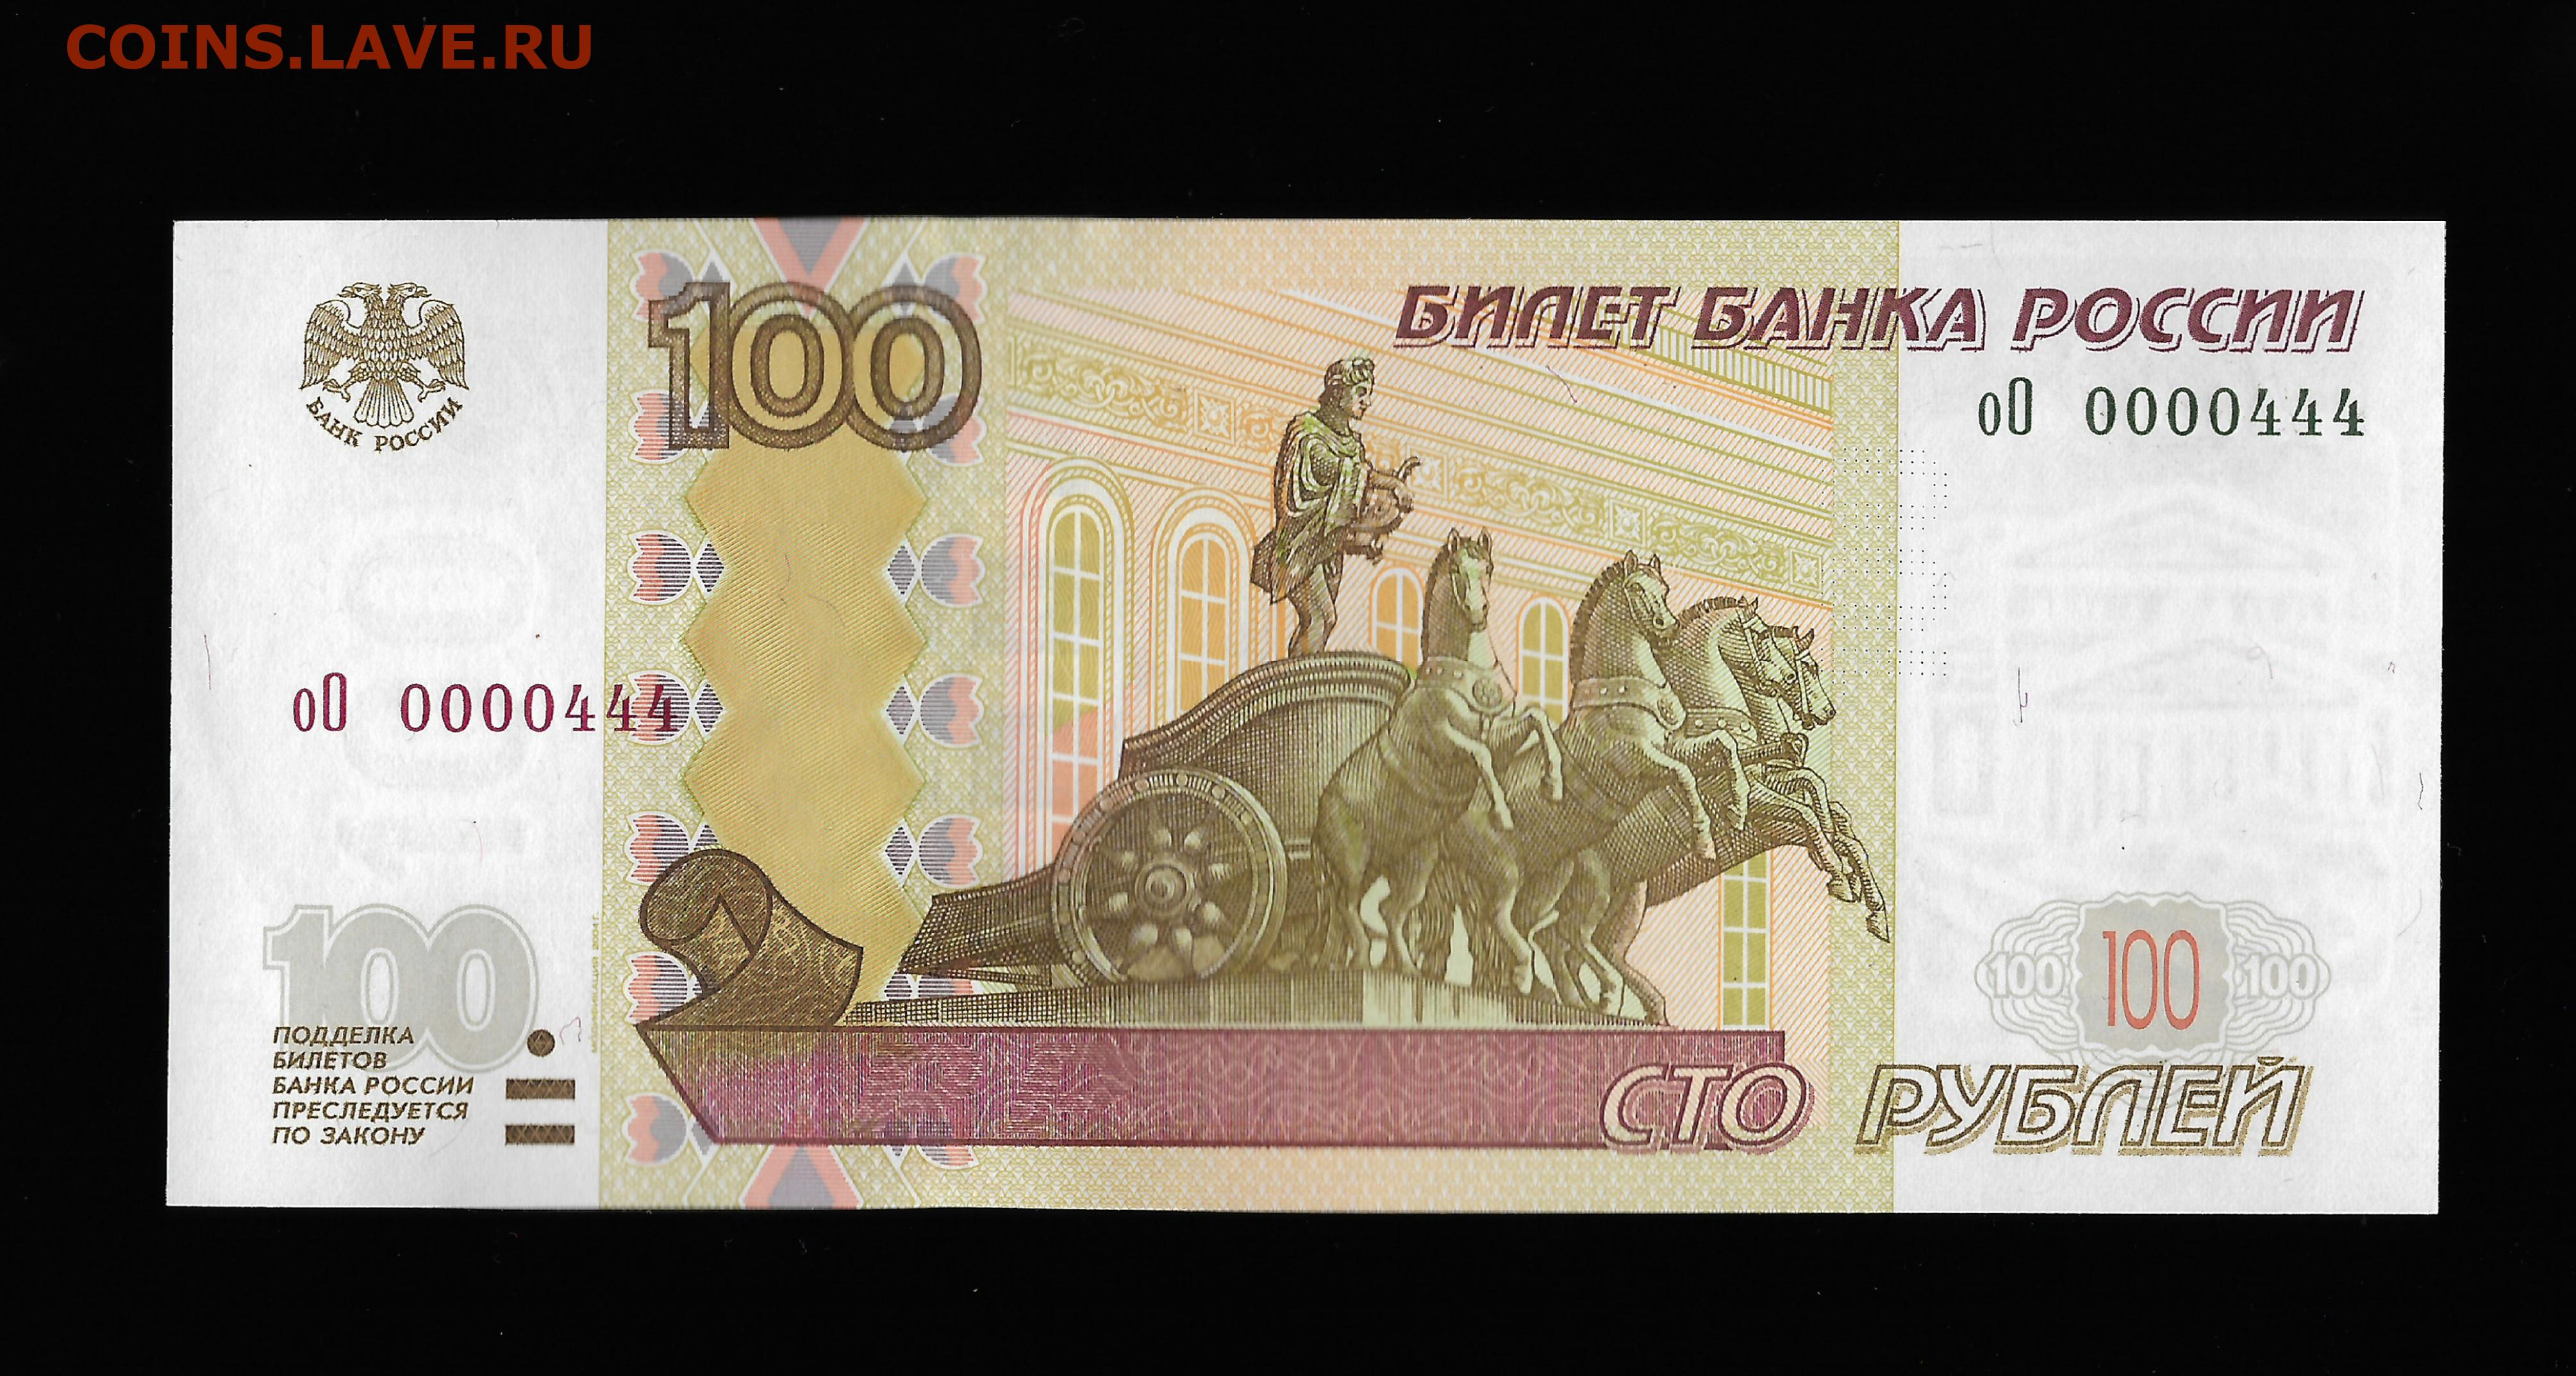 Редкие номера купюр. Купюра 100 рублей 1997. Купюра 4 рубля. 4 Тысячи рублей банкнота. Купюры с интересным дизайном.